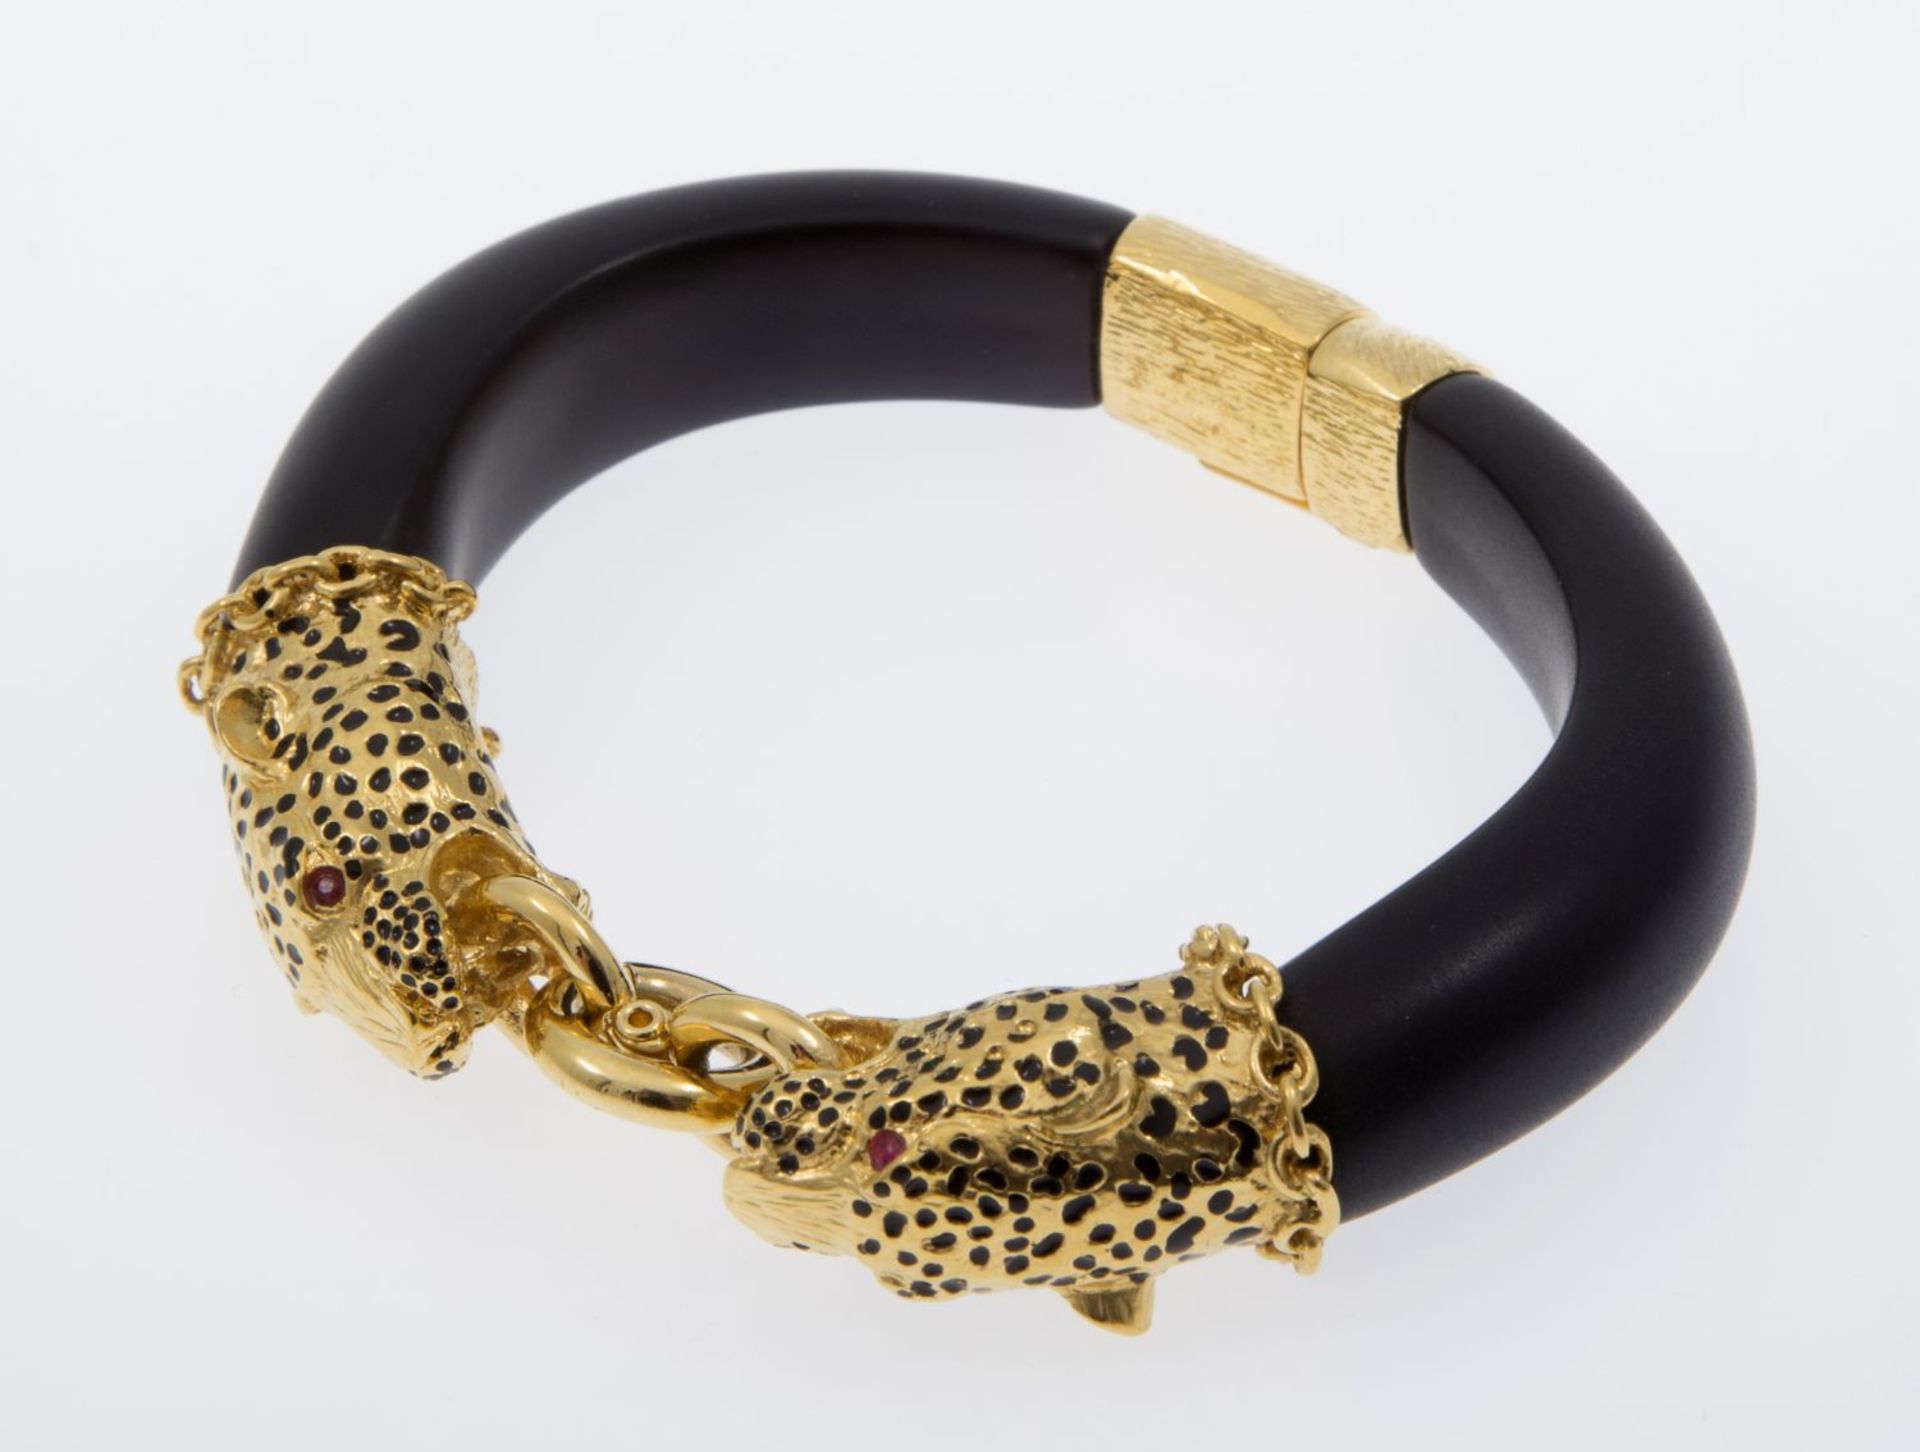 Pantherarmband Metall, vergoldet. Emaildekor. Replik nach dem Armband der Herzogin von Windsor. Fran - Bild 2 aus 3